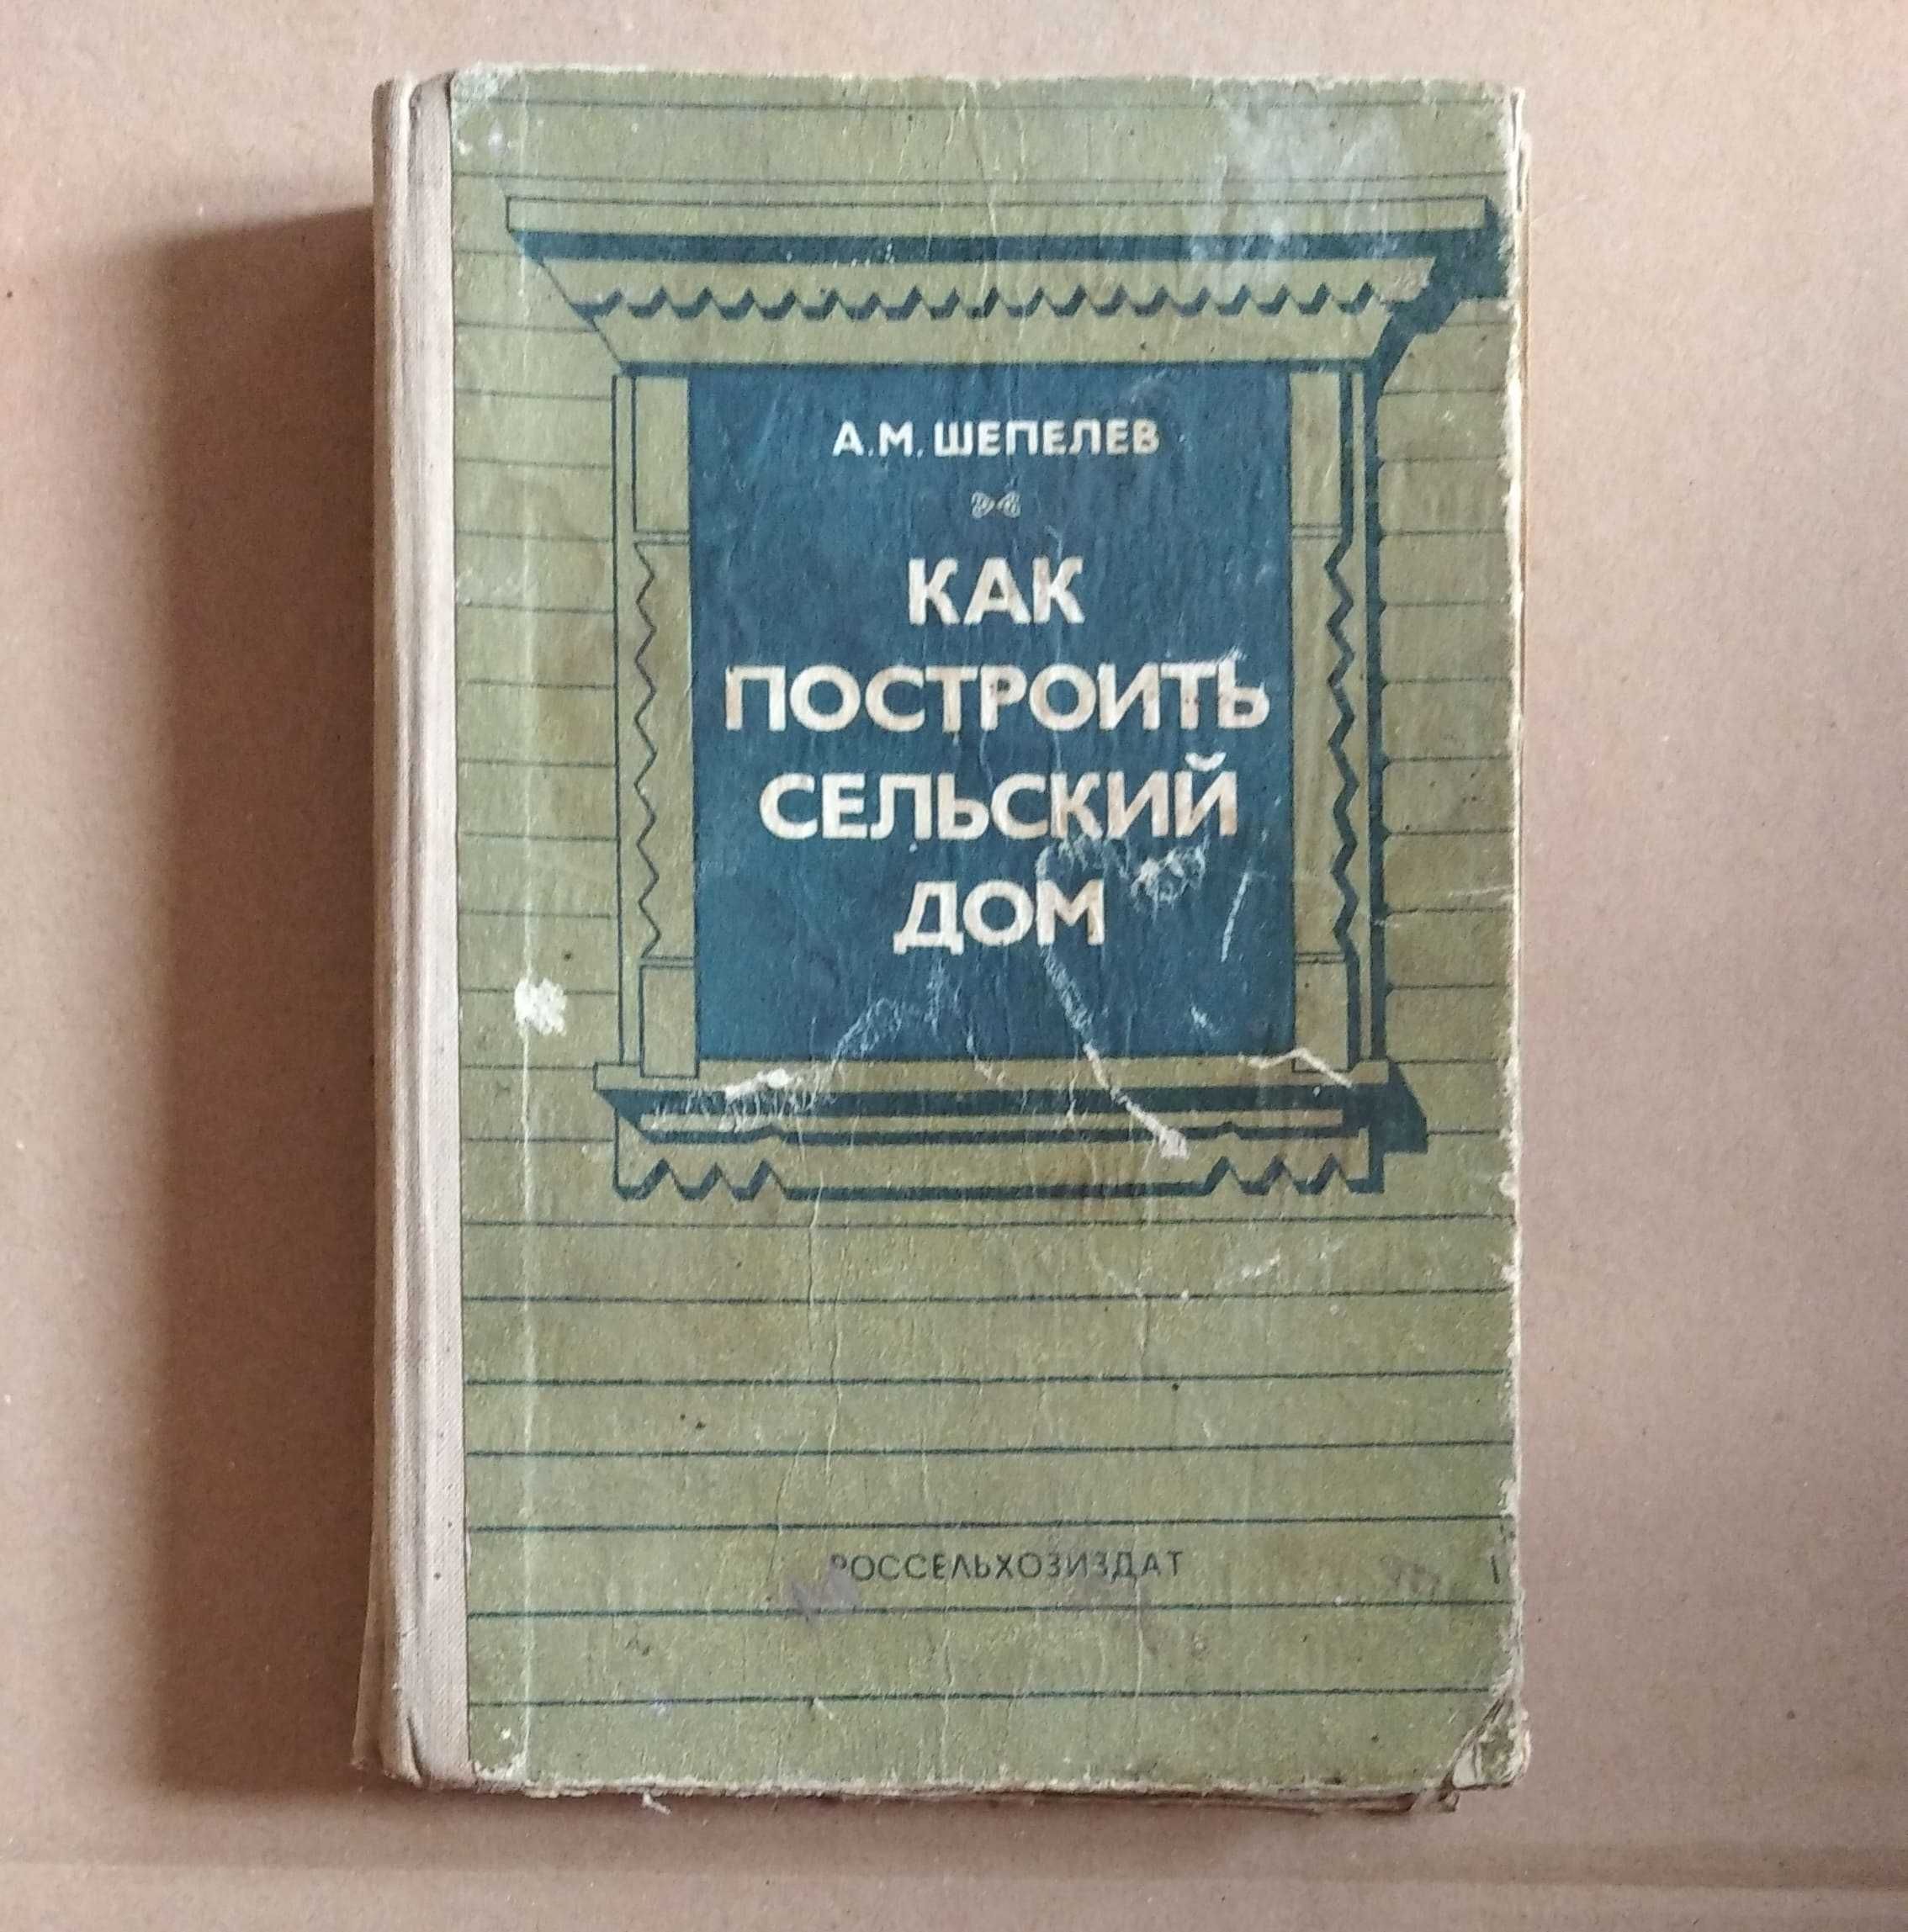 книга как построить сельский дом А.М.Шепелев 4-е изд. 1986 год 400ст-ц